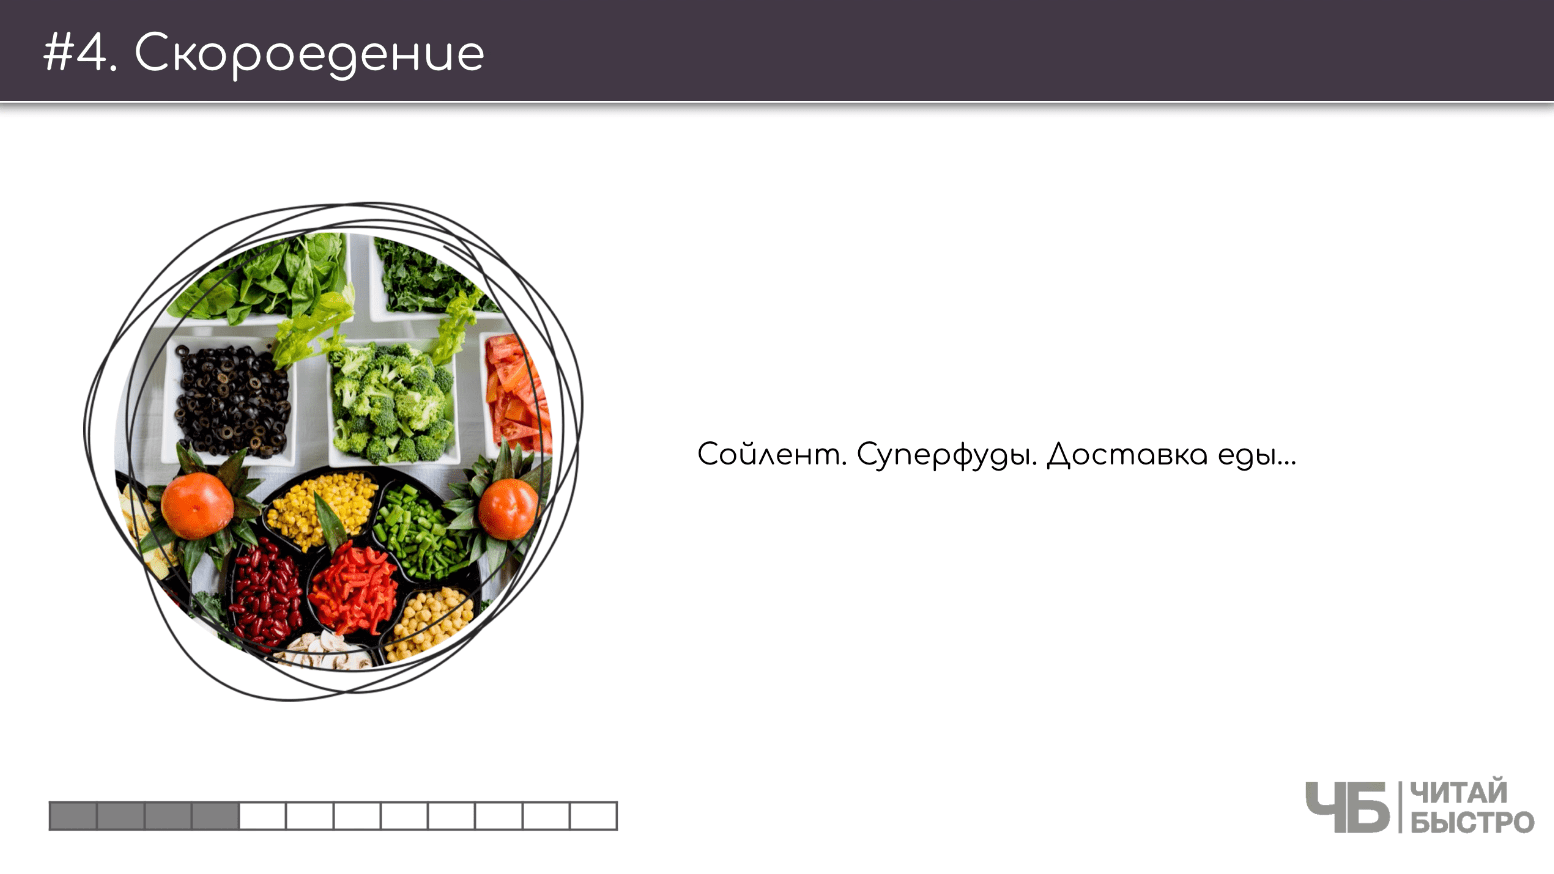 На этом слайде изображен тезис о скороедение и иллюстрация тарелки с разнообразной едой.